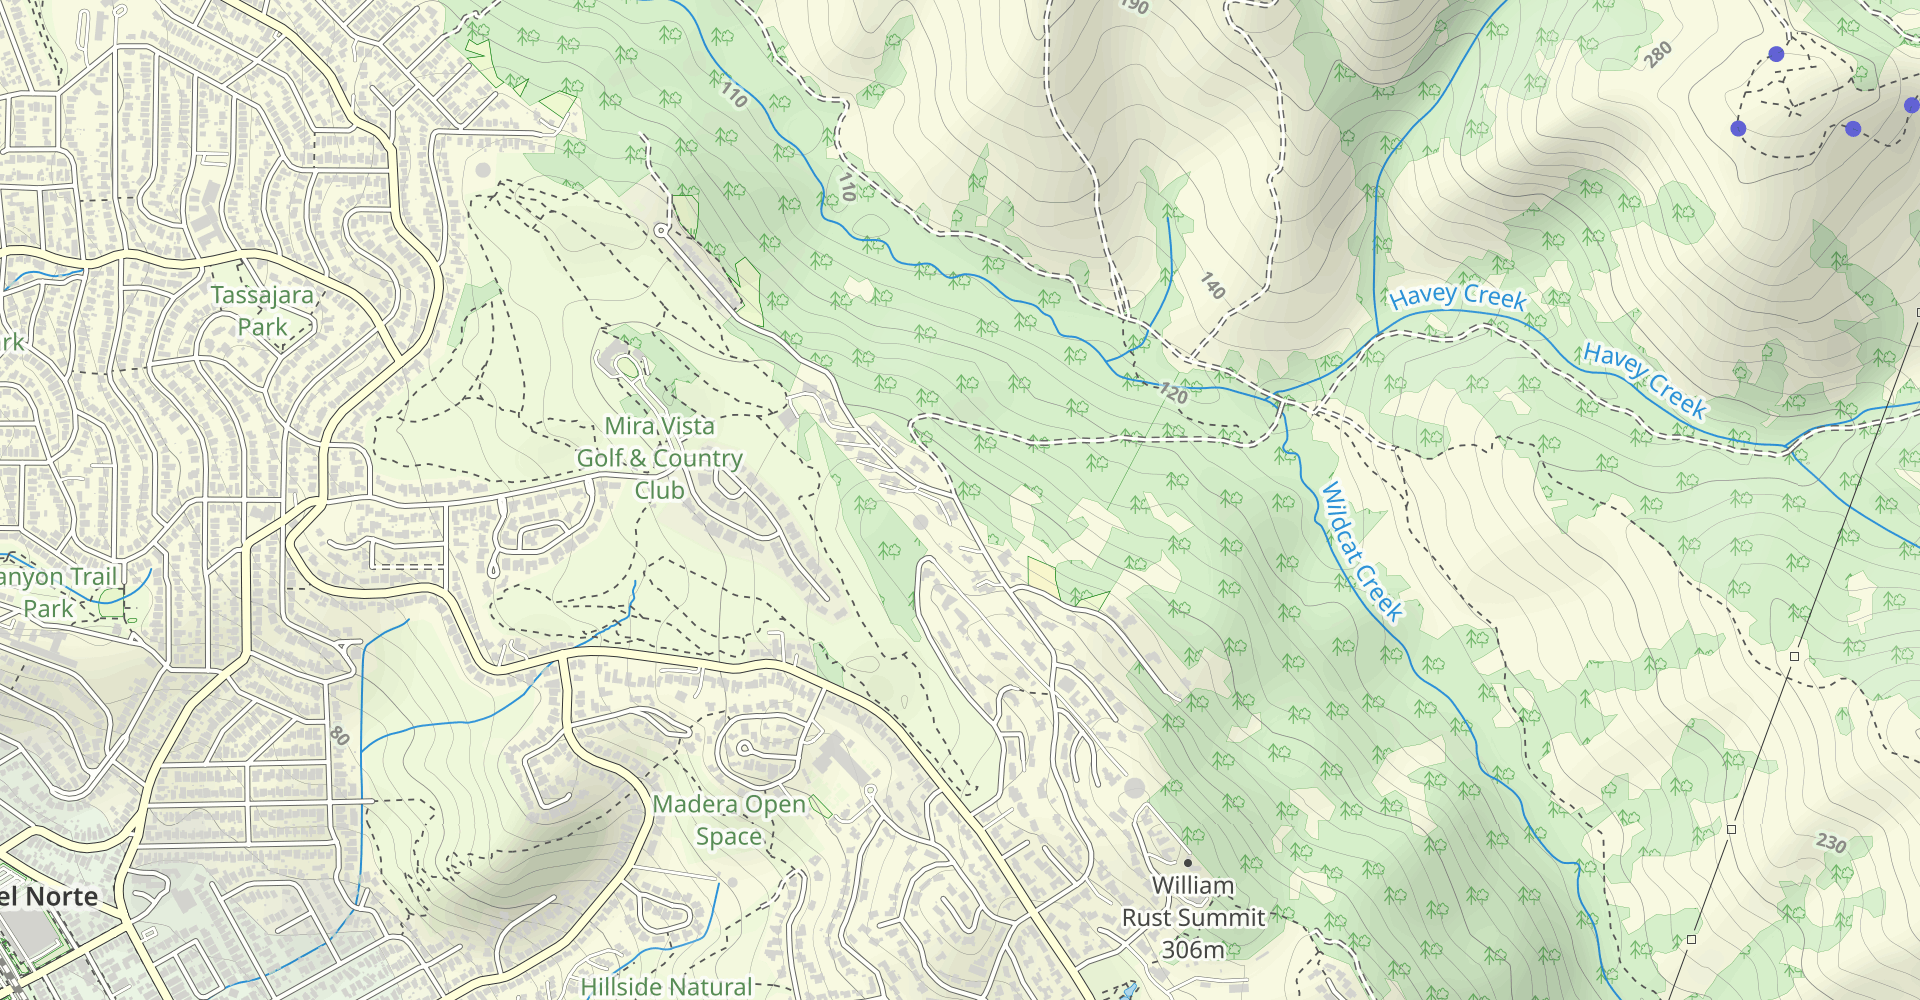 Wildcat Creek, Nimitz, and Conlon Loop